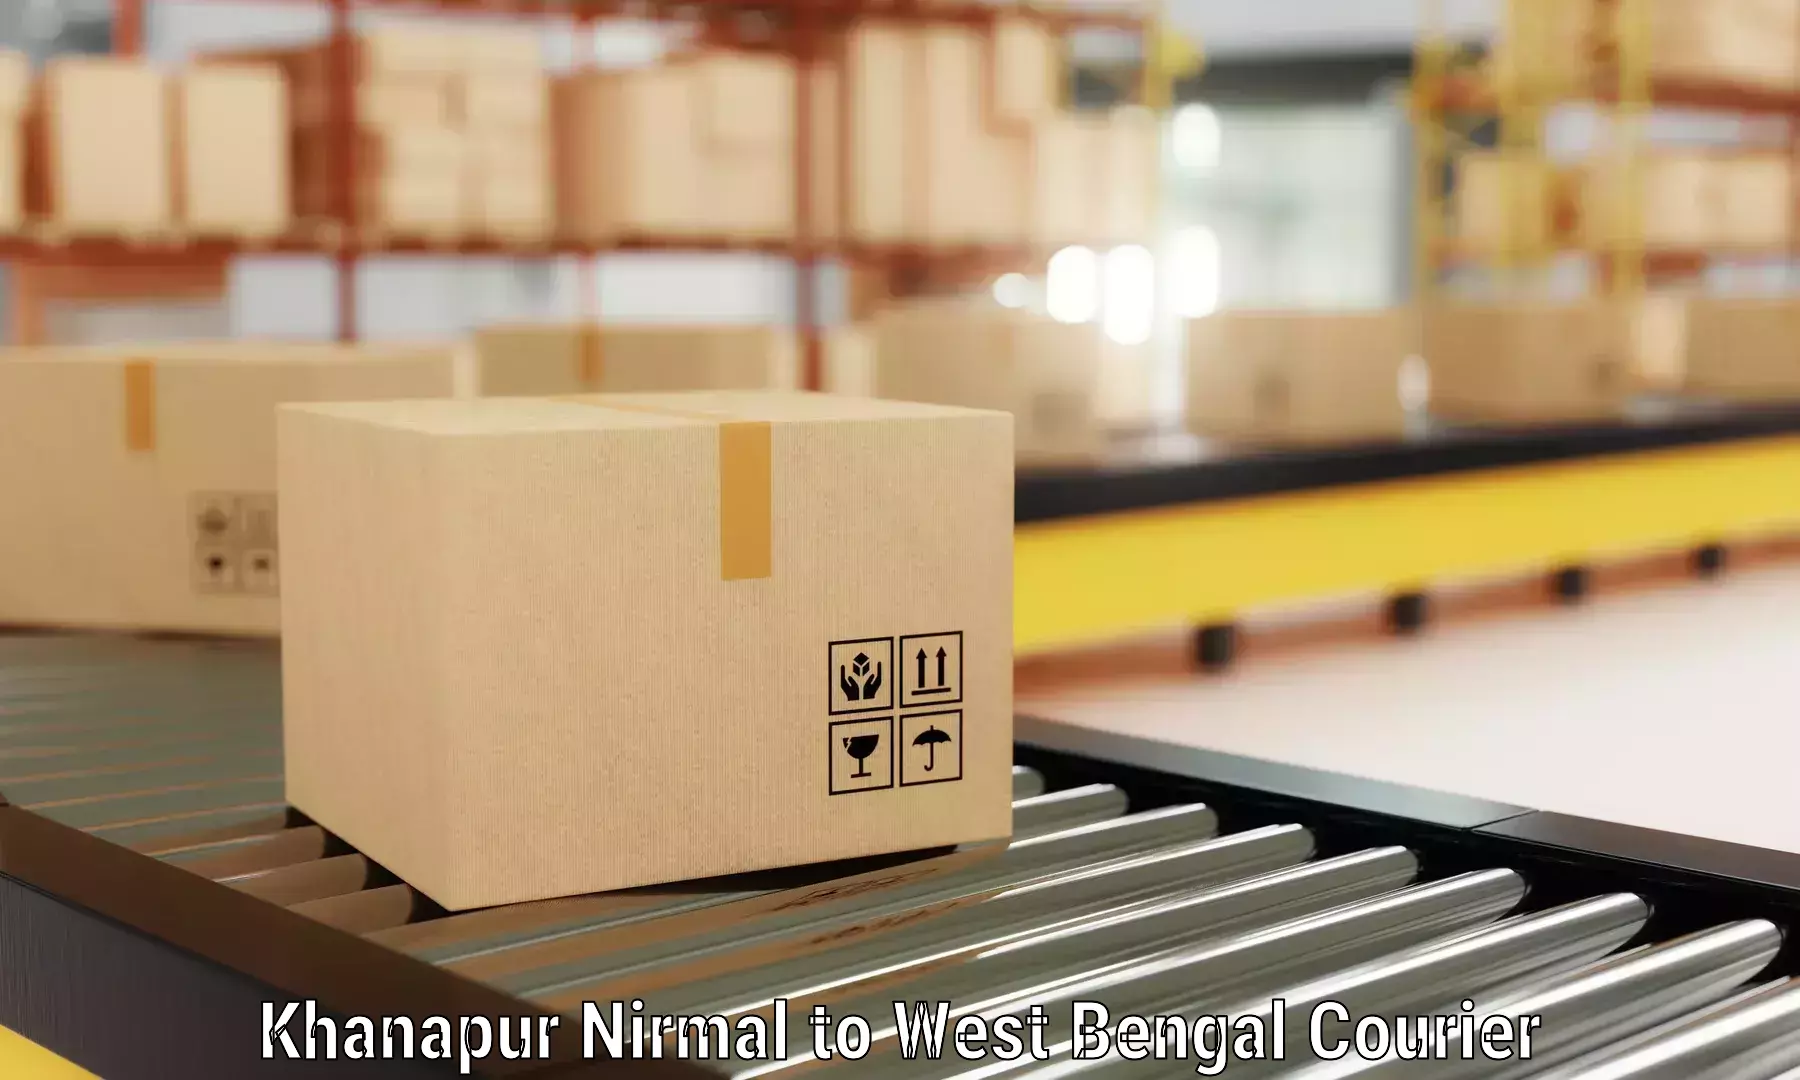 Furniture moving experts Khanapur Nirmal to Taki